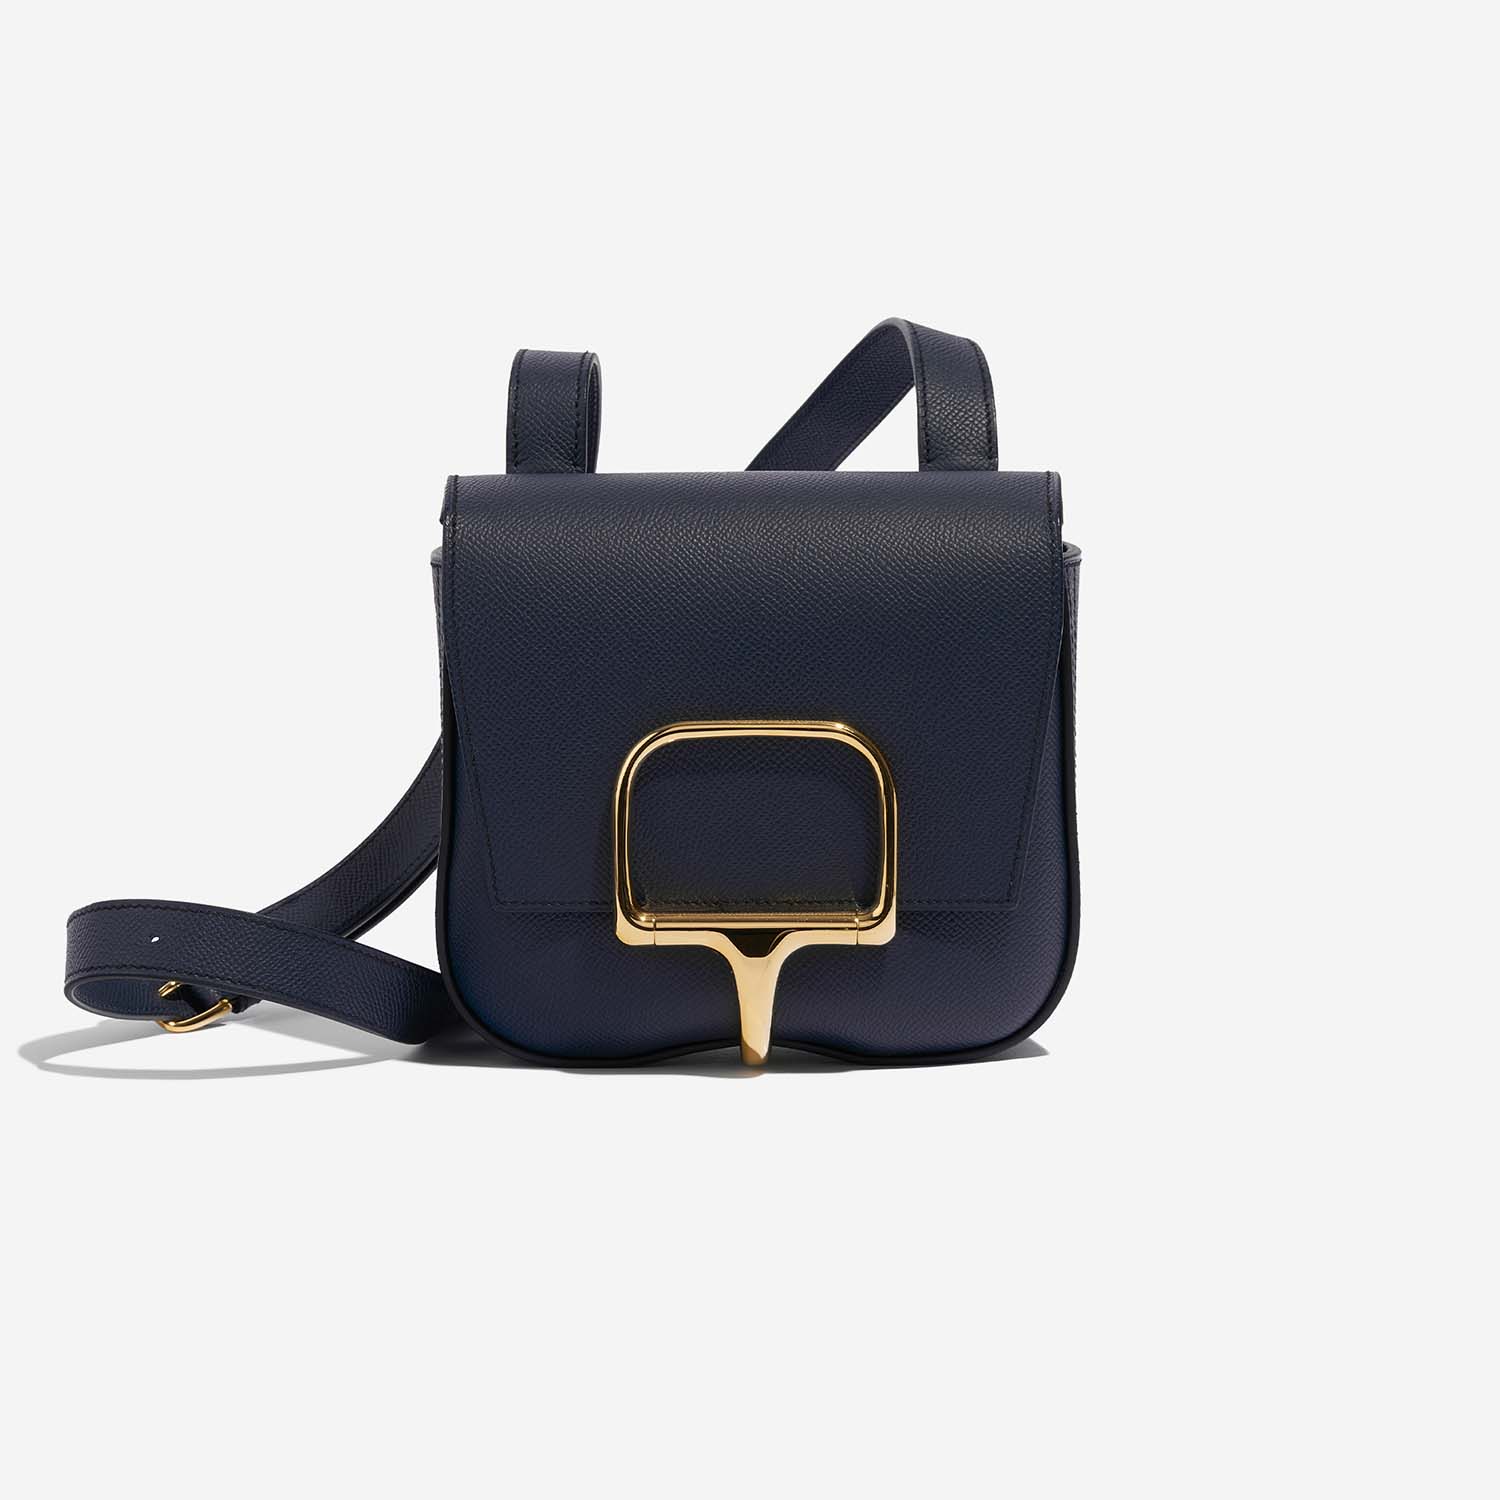 Hermès DellaCavalleria Mini BleuIndigo Front | Verkaufen Sie Ihre Designer-Tasche auf Saclab.com